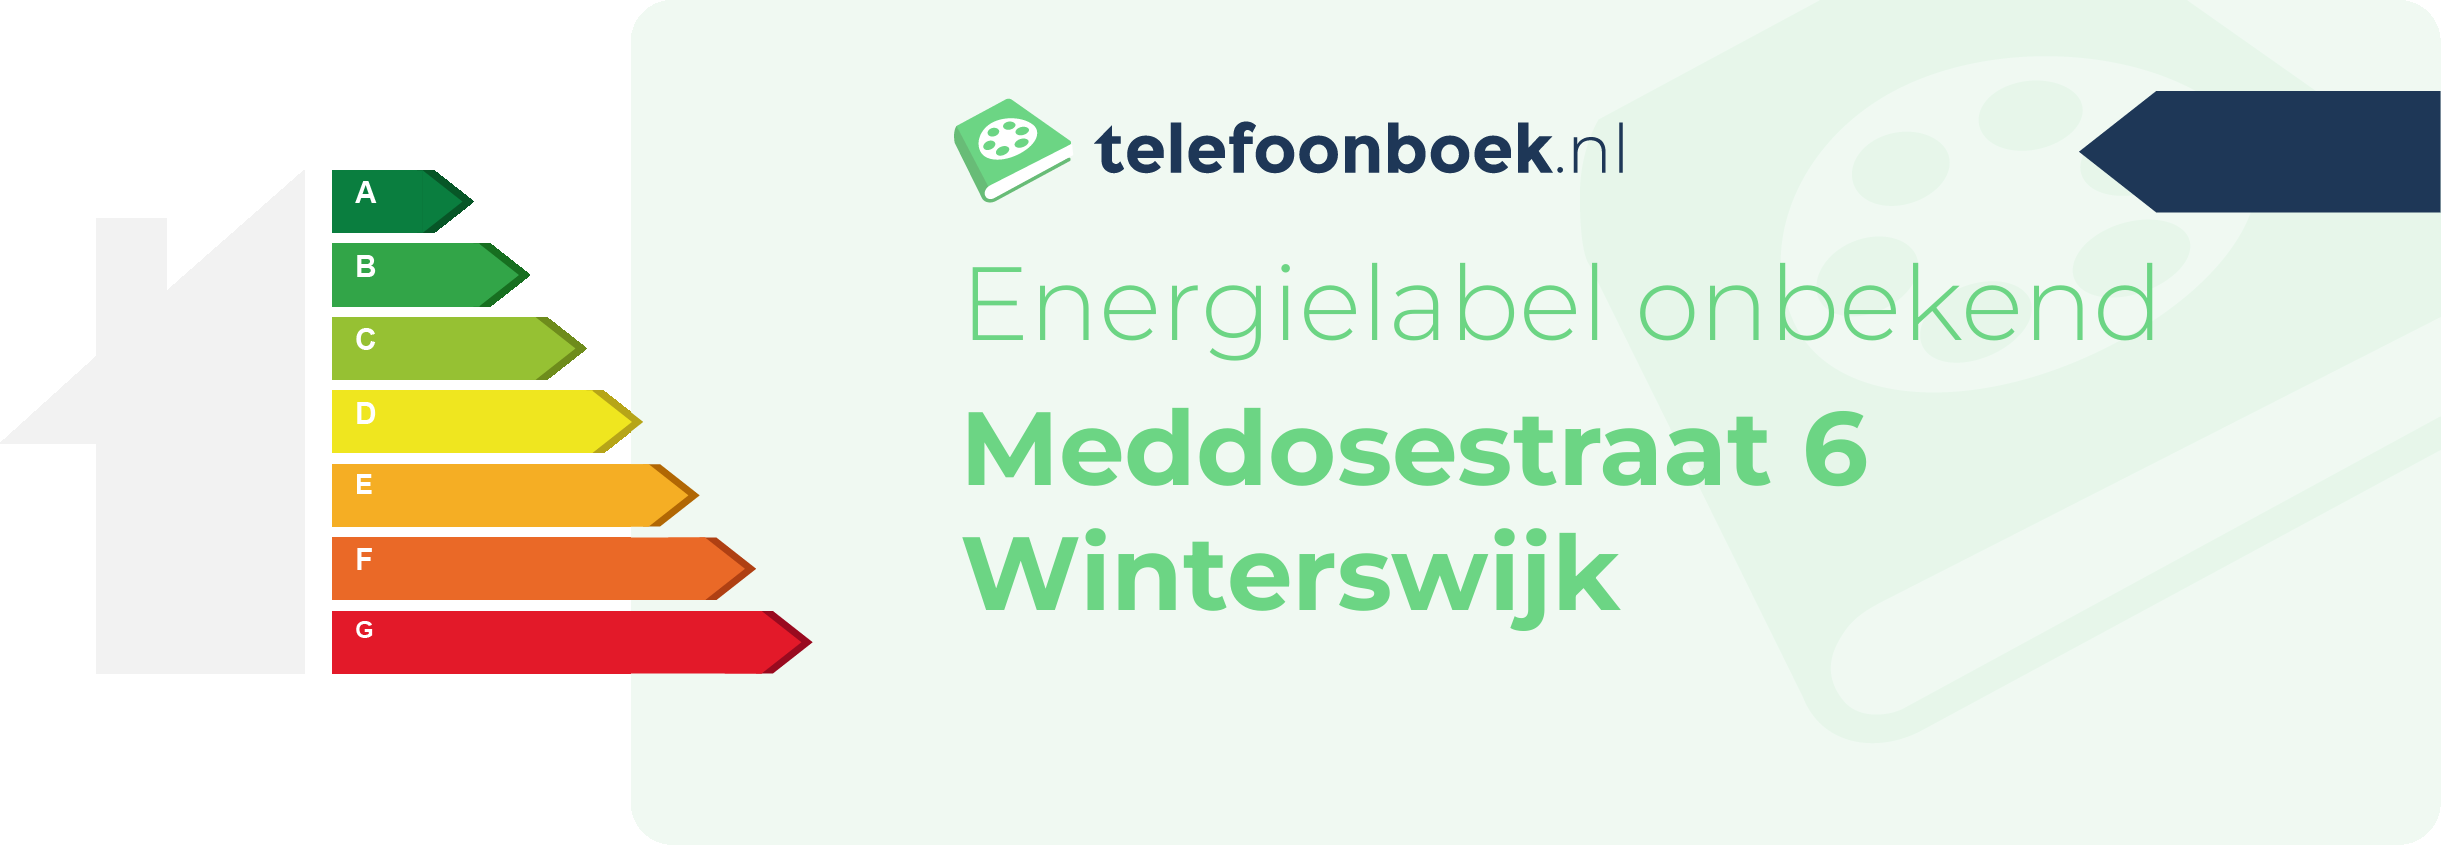 Energielabel Meddosestraat 6 Winterswijk